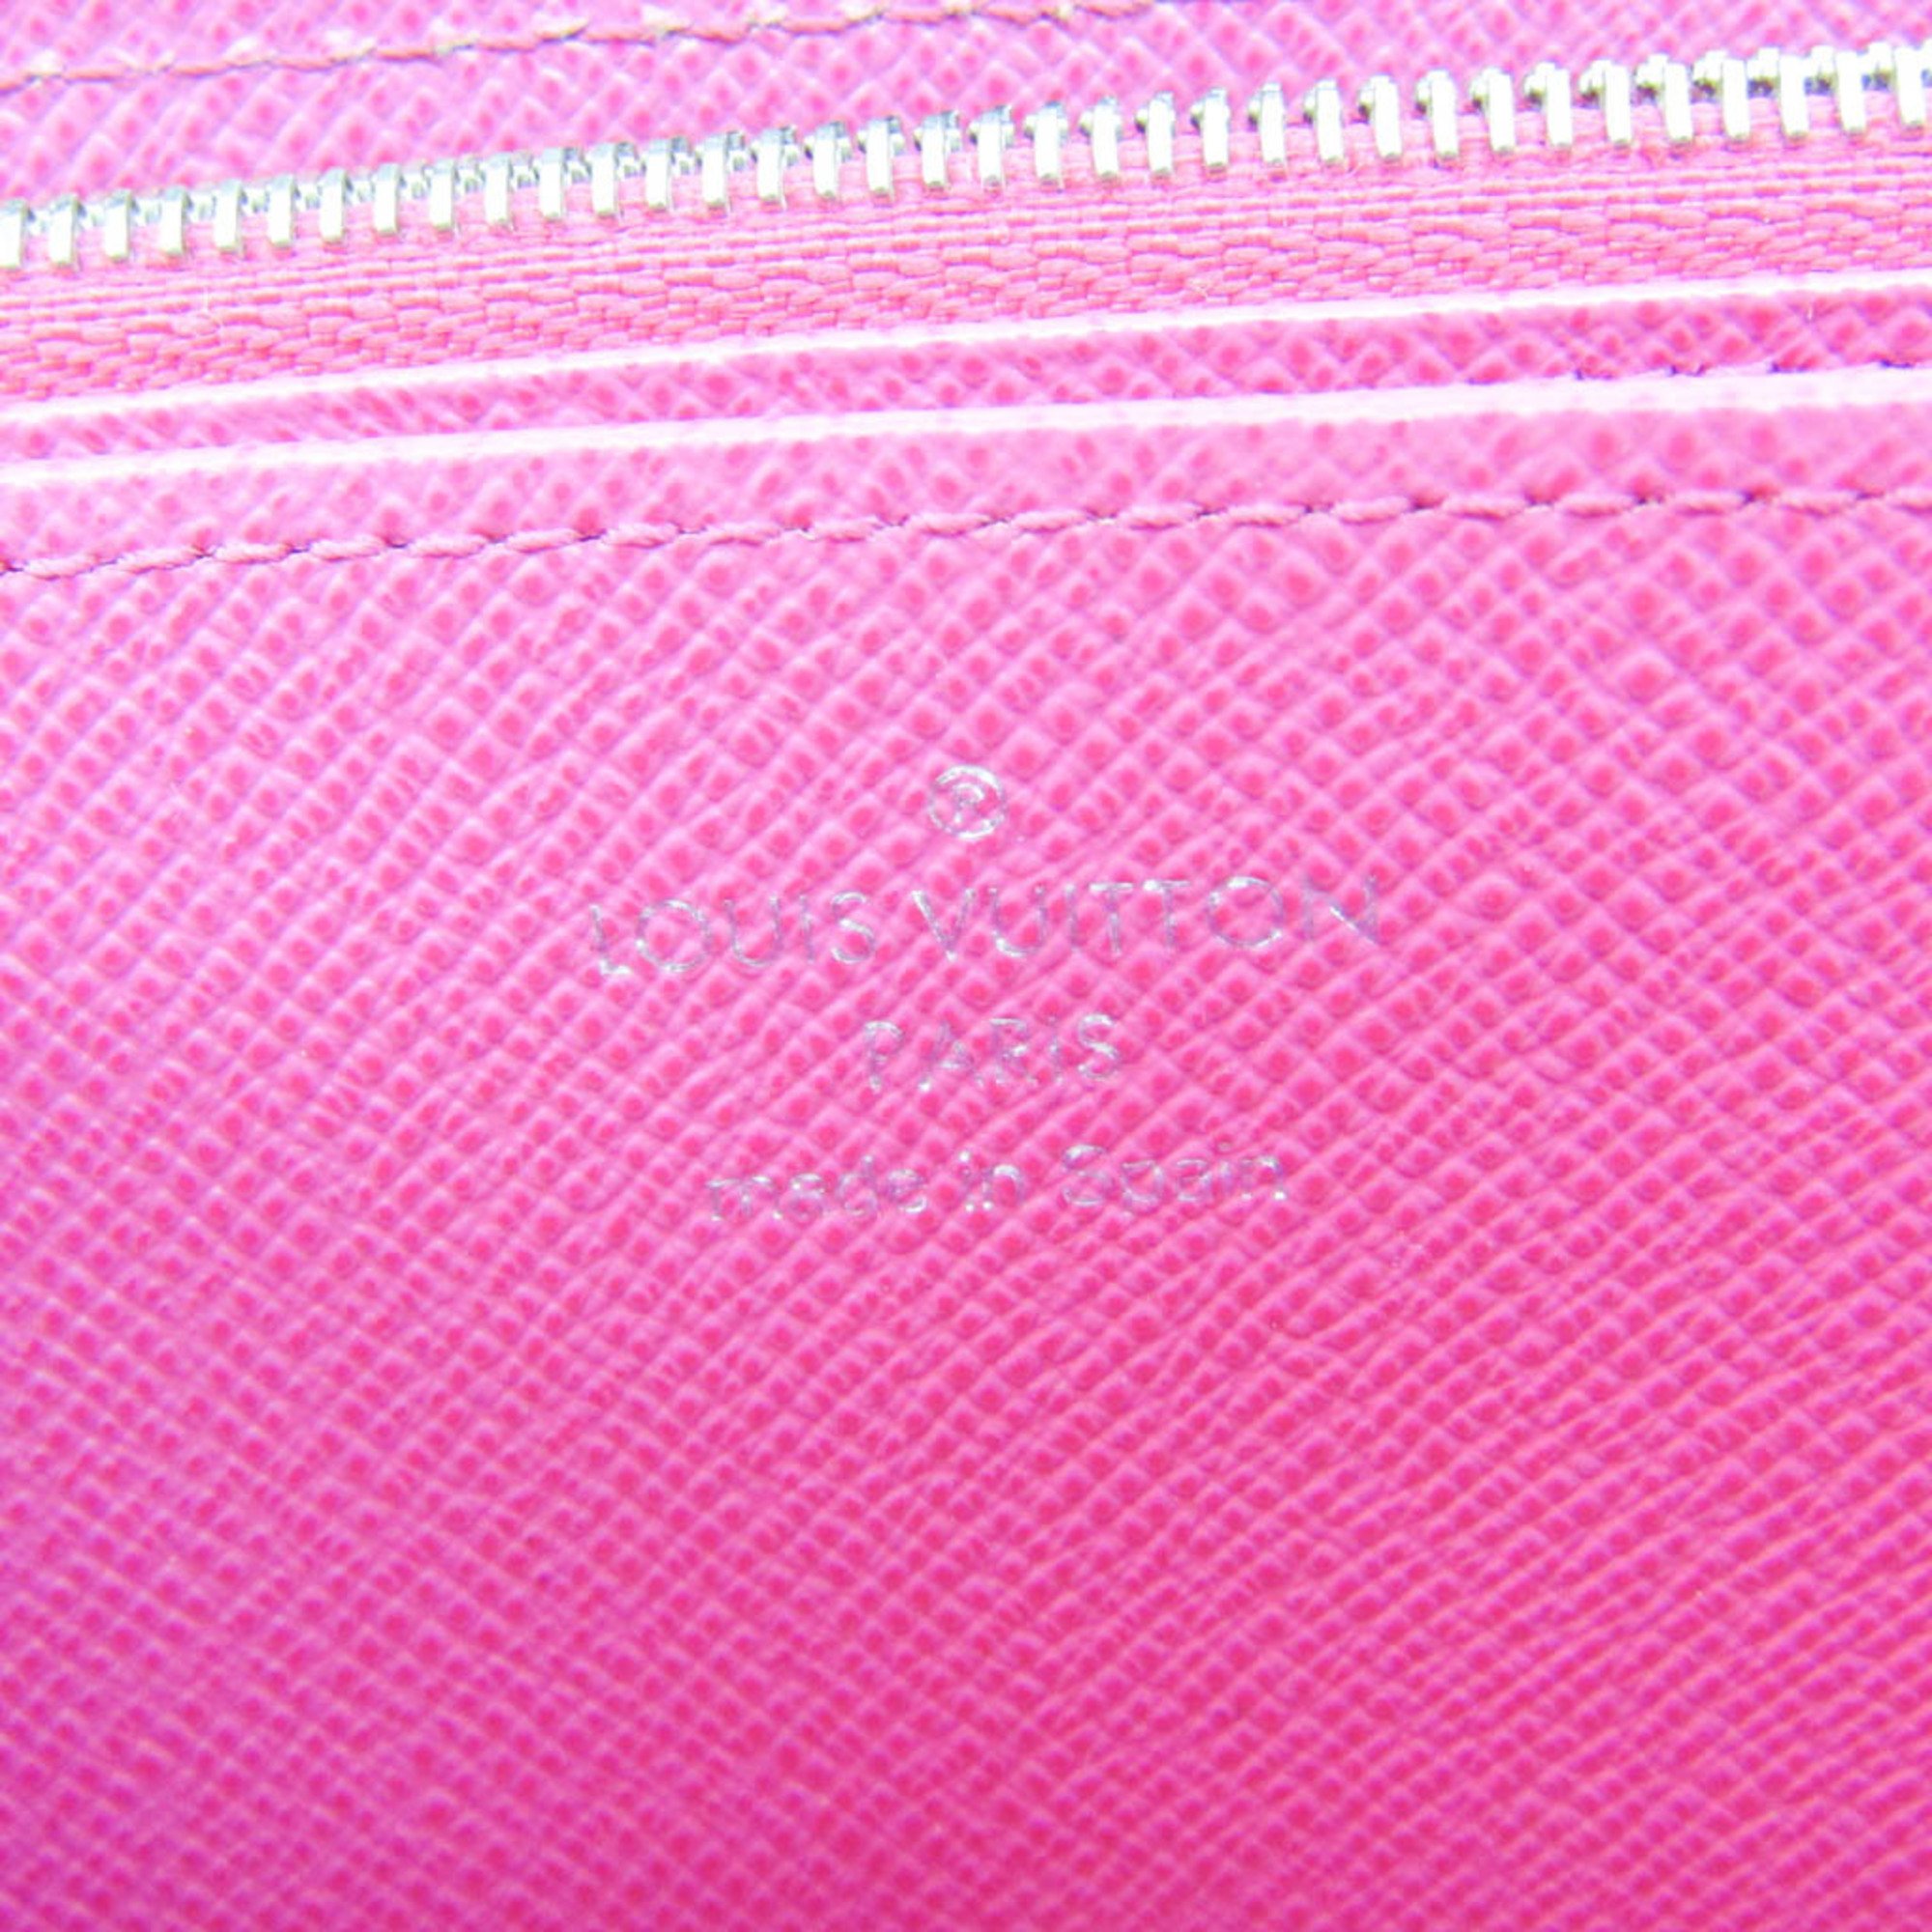 Louis Vuitton Epi Zippy-wallet M64838 Women's Epi Leather Long Wallet (bi-fold) Hot Pink,Noir